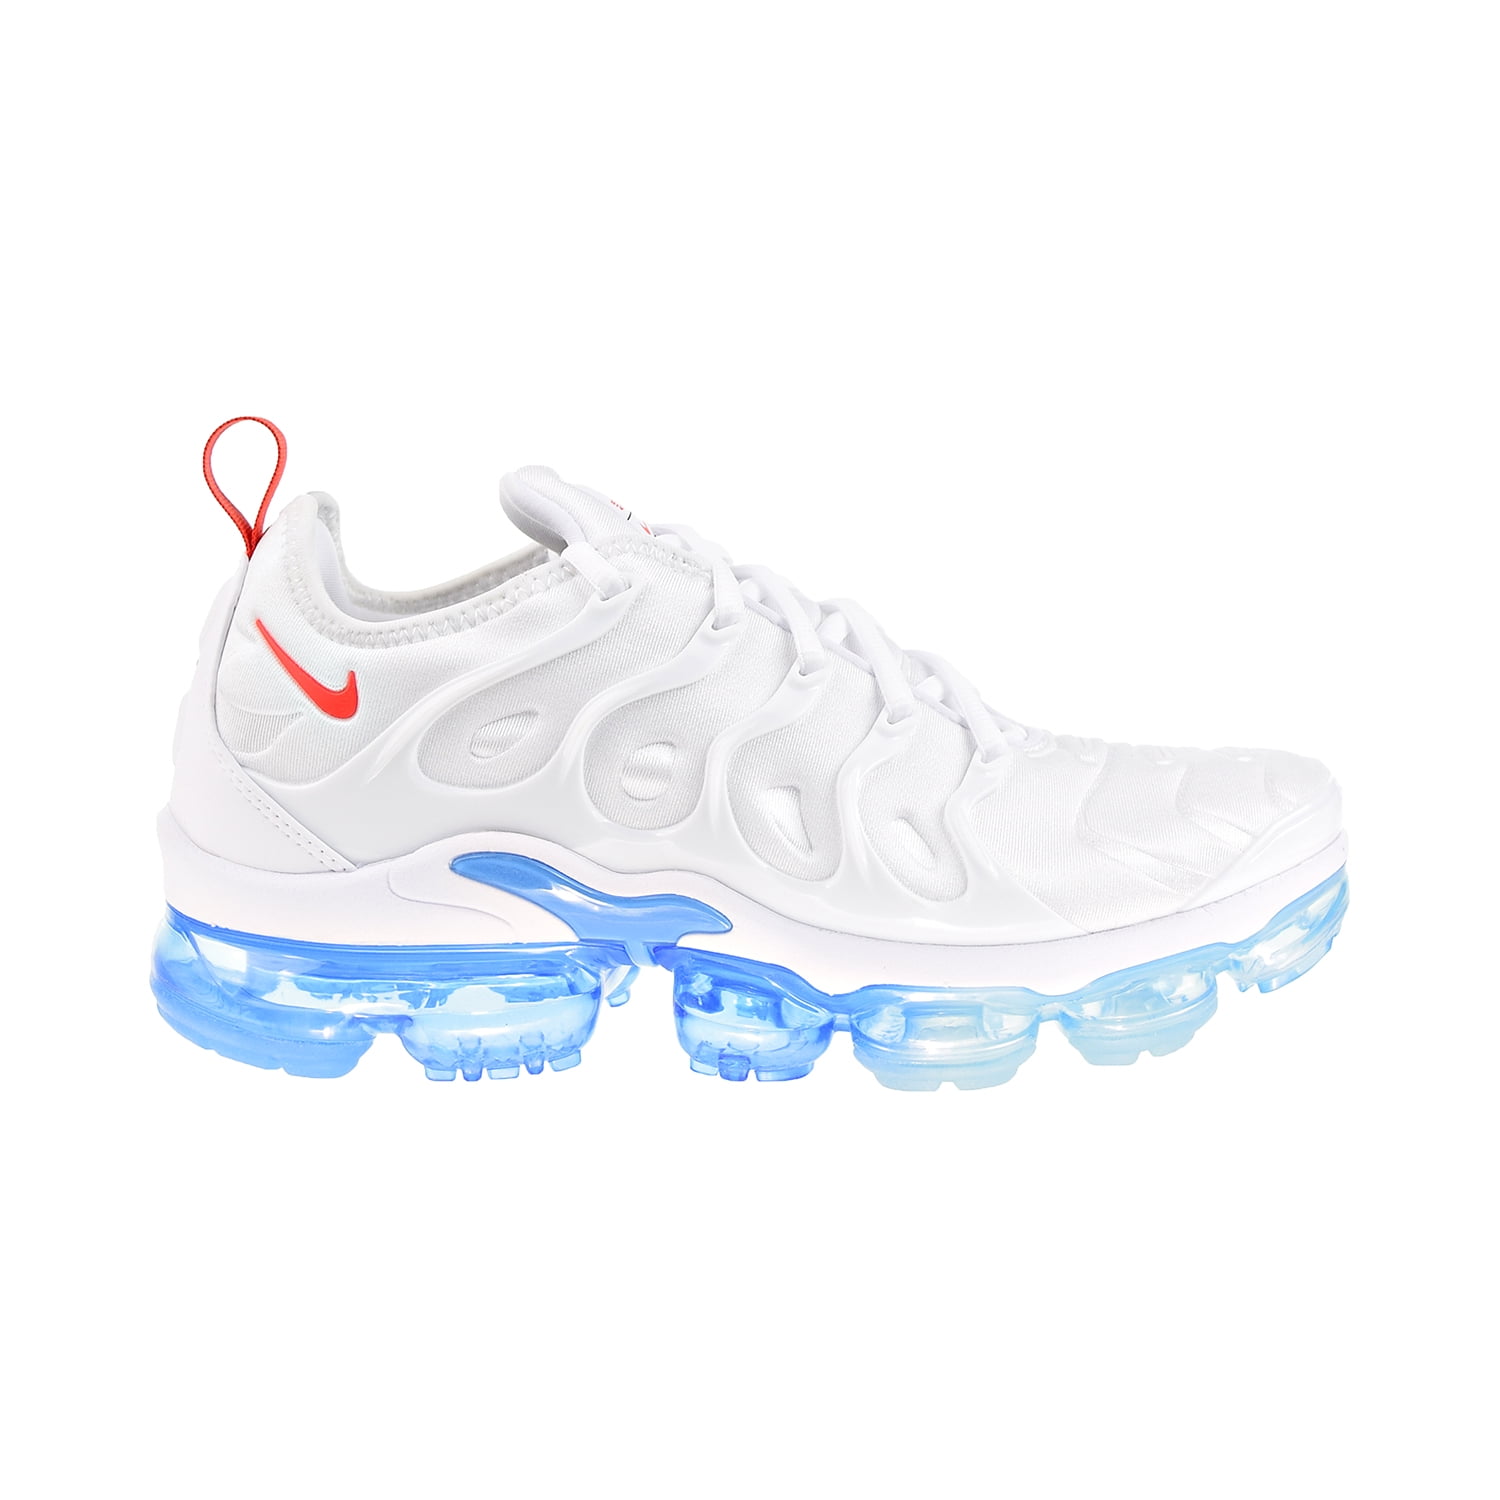 Que agradable síndrome Empleador Nike Air VaporMax Plus Men's Shoes White-Blue-Red dv2119-100 - Walmart.com